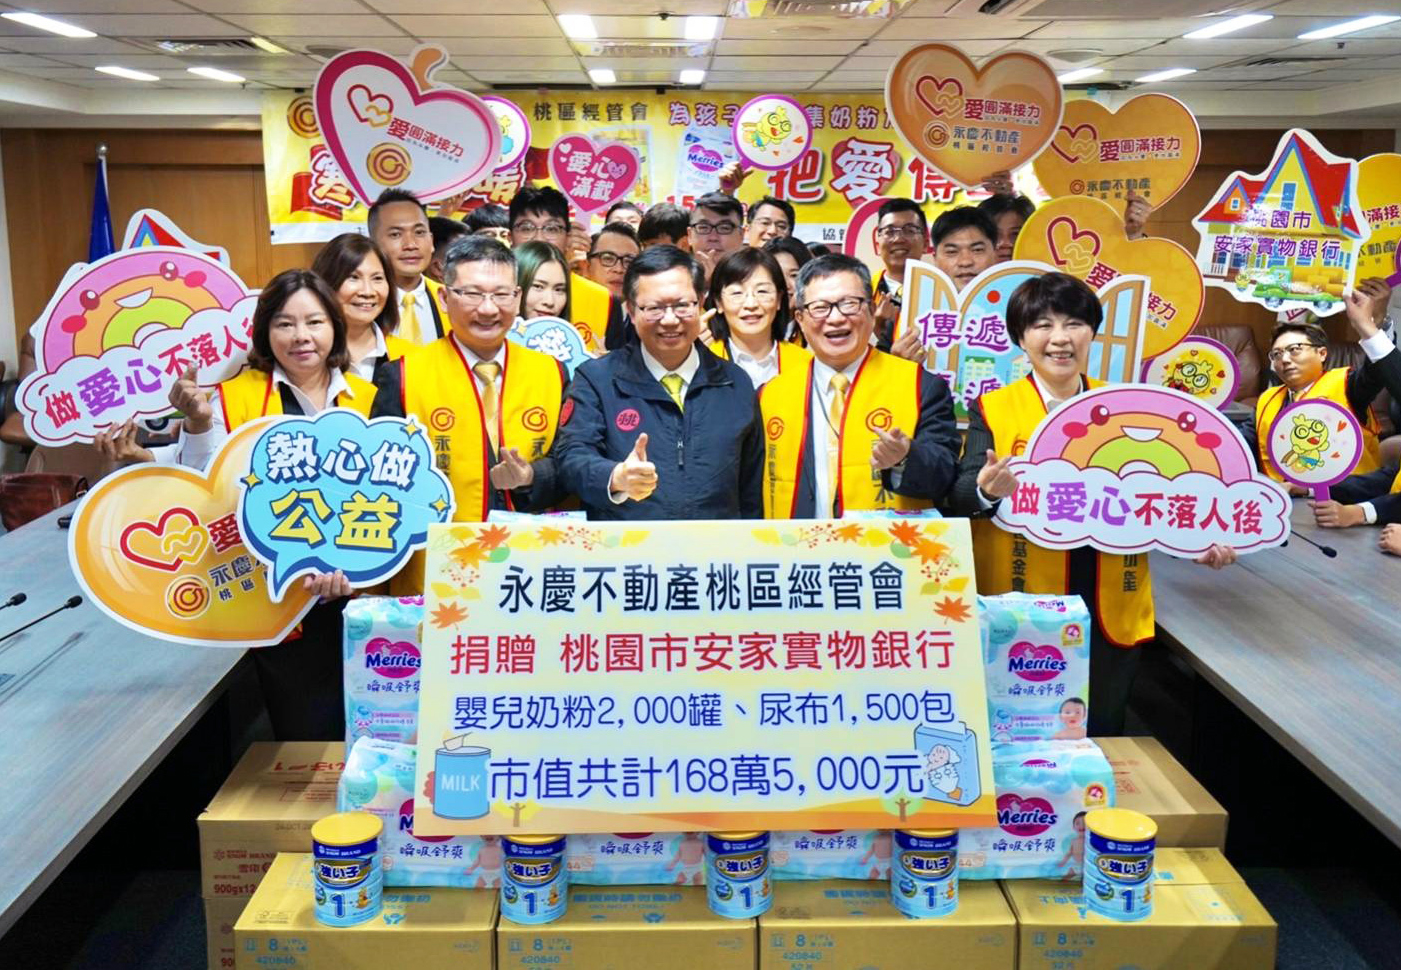 永慶不動產捐贈168萬元奶粉、尿布 寒冬送暖助弱勢 5